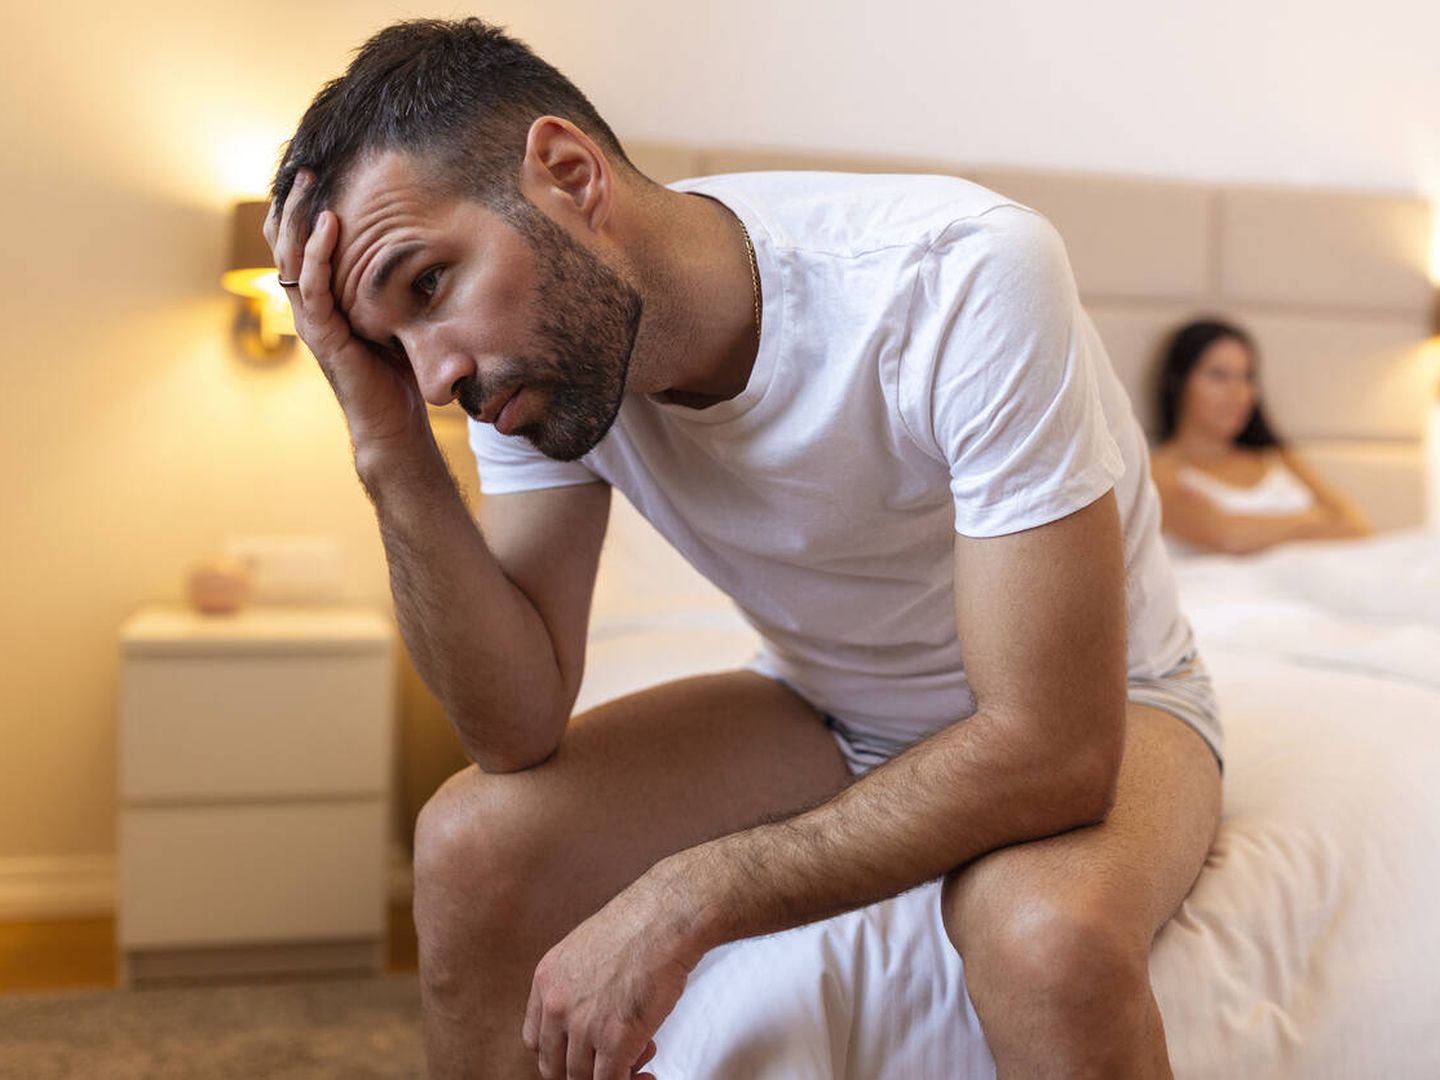 La falta de deseo sexual es una de las consecuencias del síndrome de déficit de testosterona. (iStock)